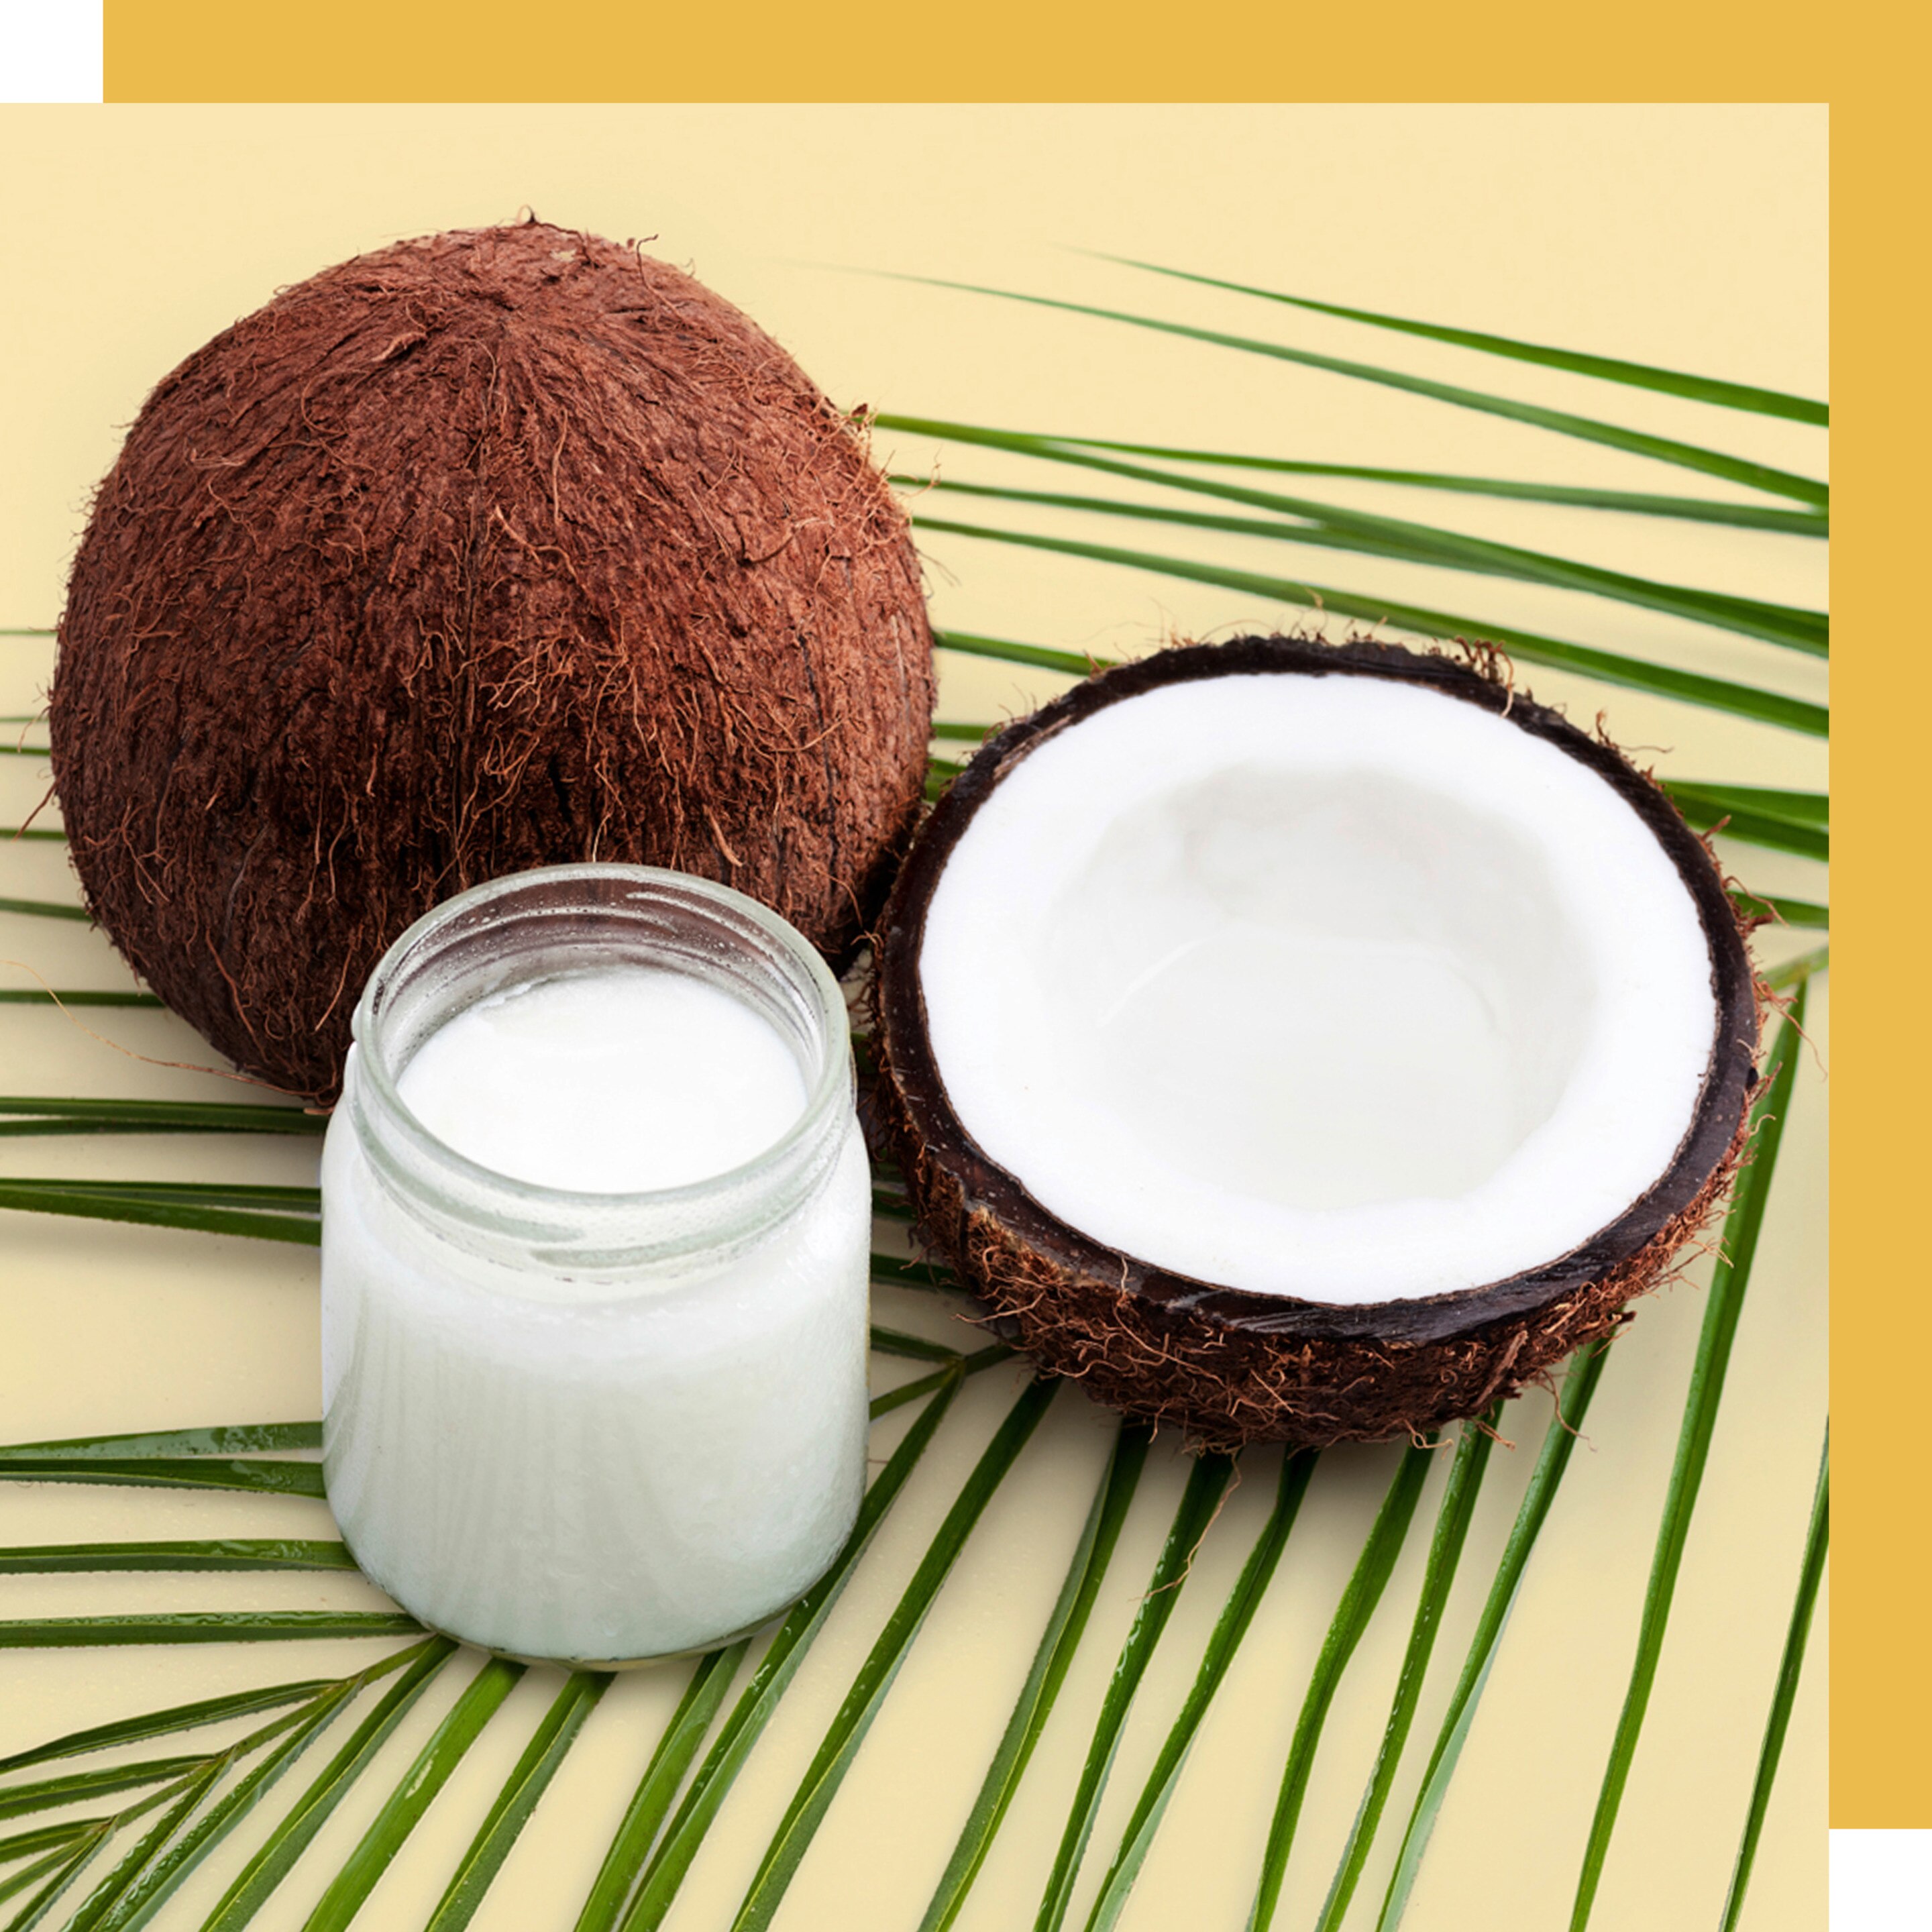 Coco con envase de aceite de coco